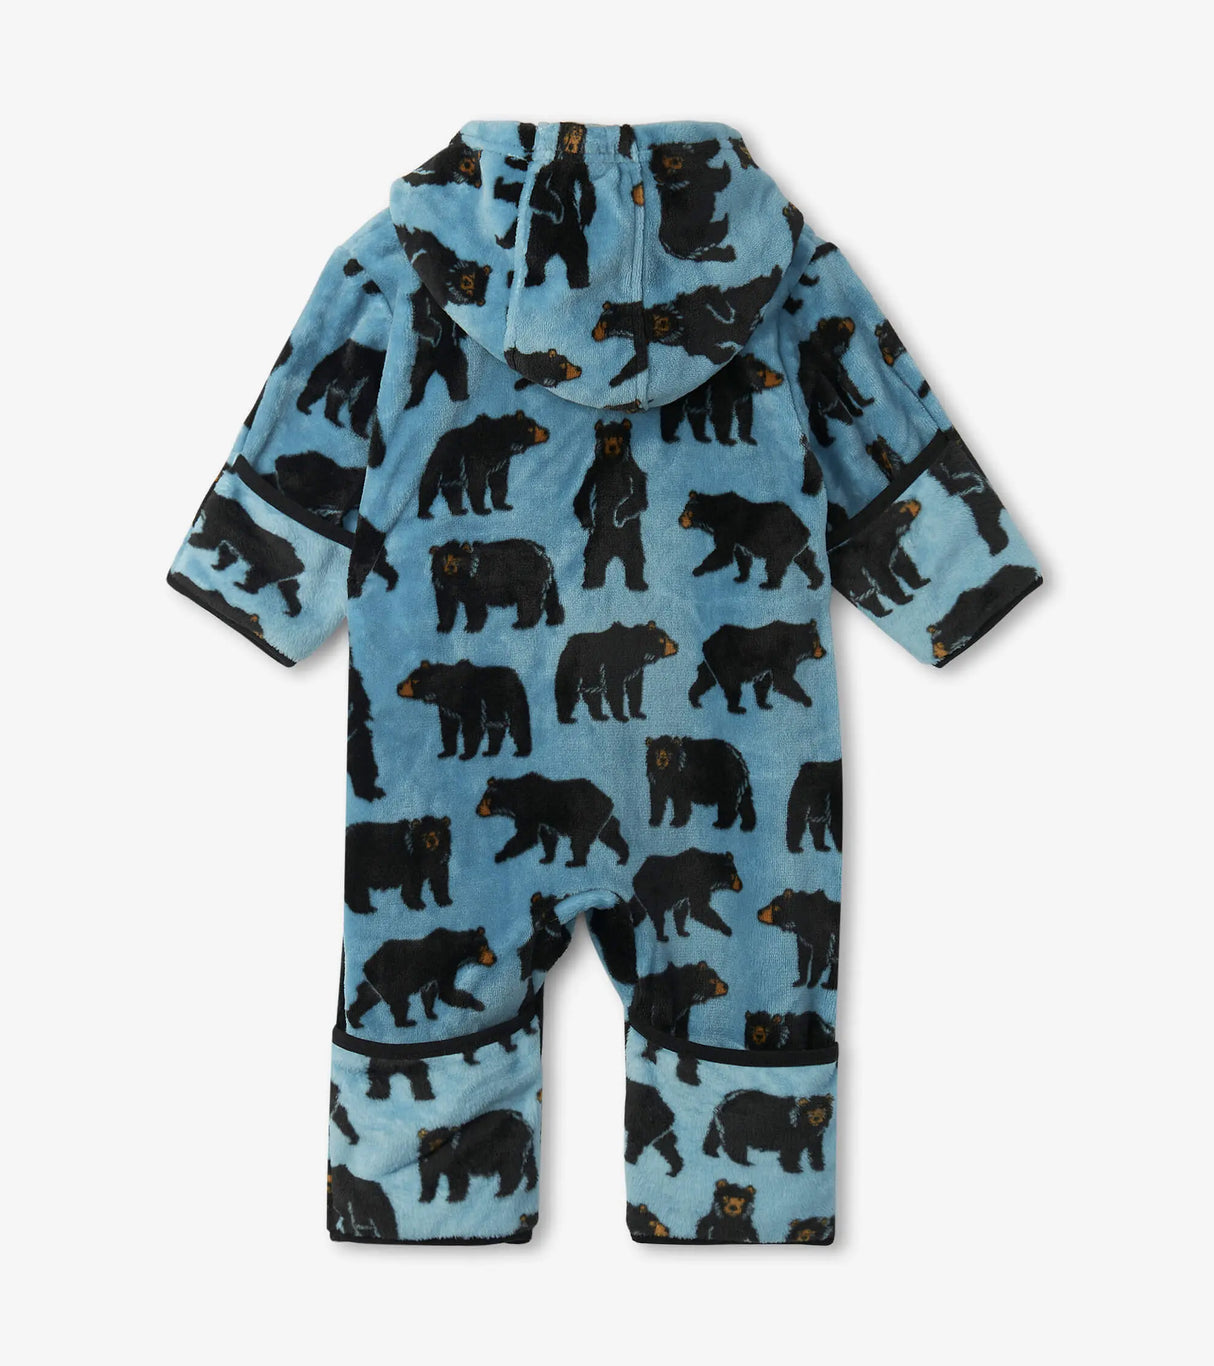 Wild Bears Fuzzy Fleece Baby Bundler | Hatley - Jenni Kidz